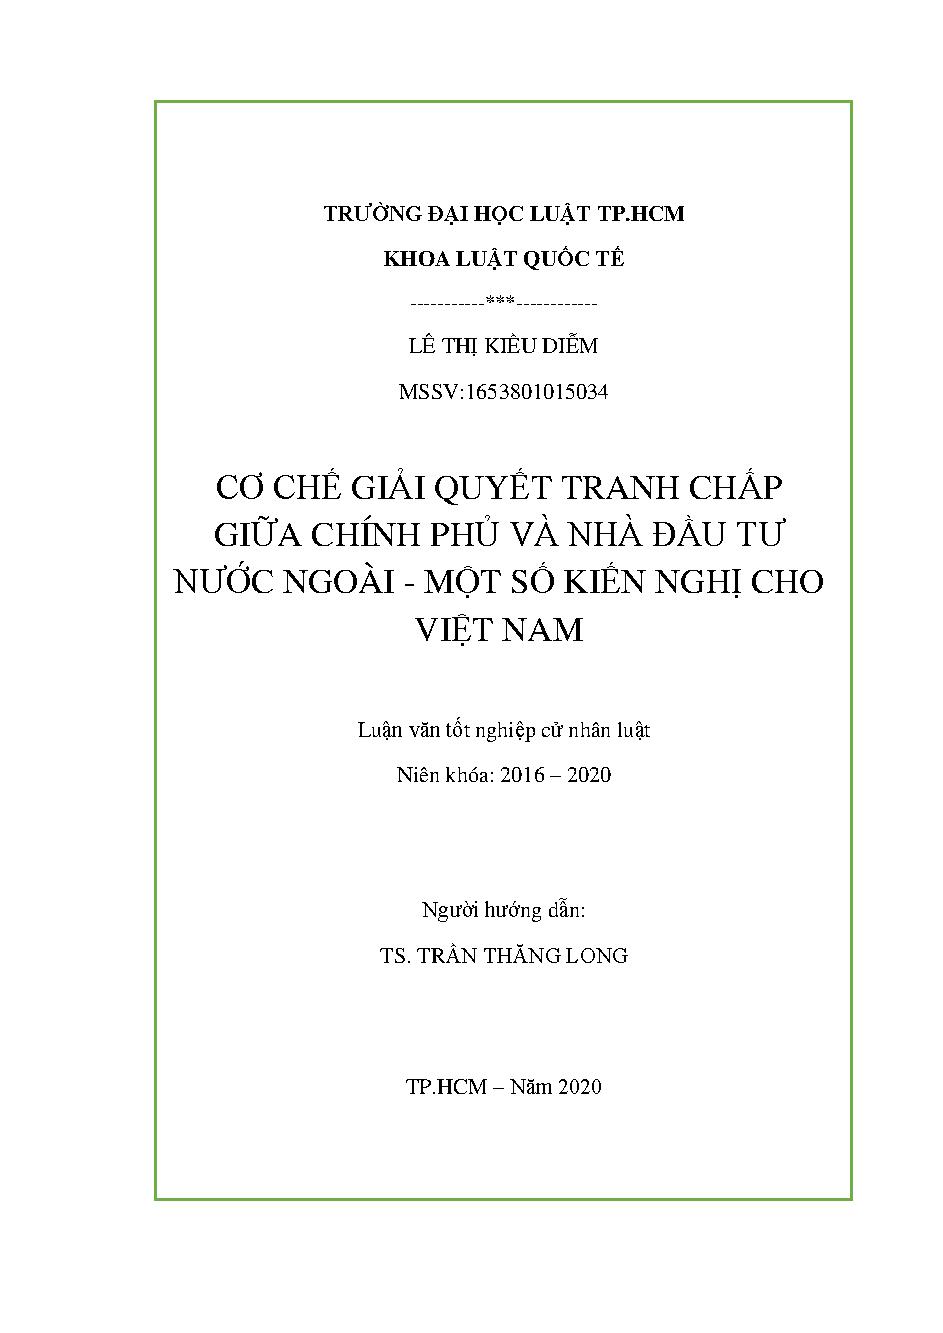 Cơ chế giải quyết tranh chấp giữa Chính phủ và nhà đầu tư nước ngoài - một số kiến nghị cho Việt Nam